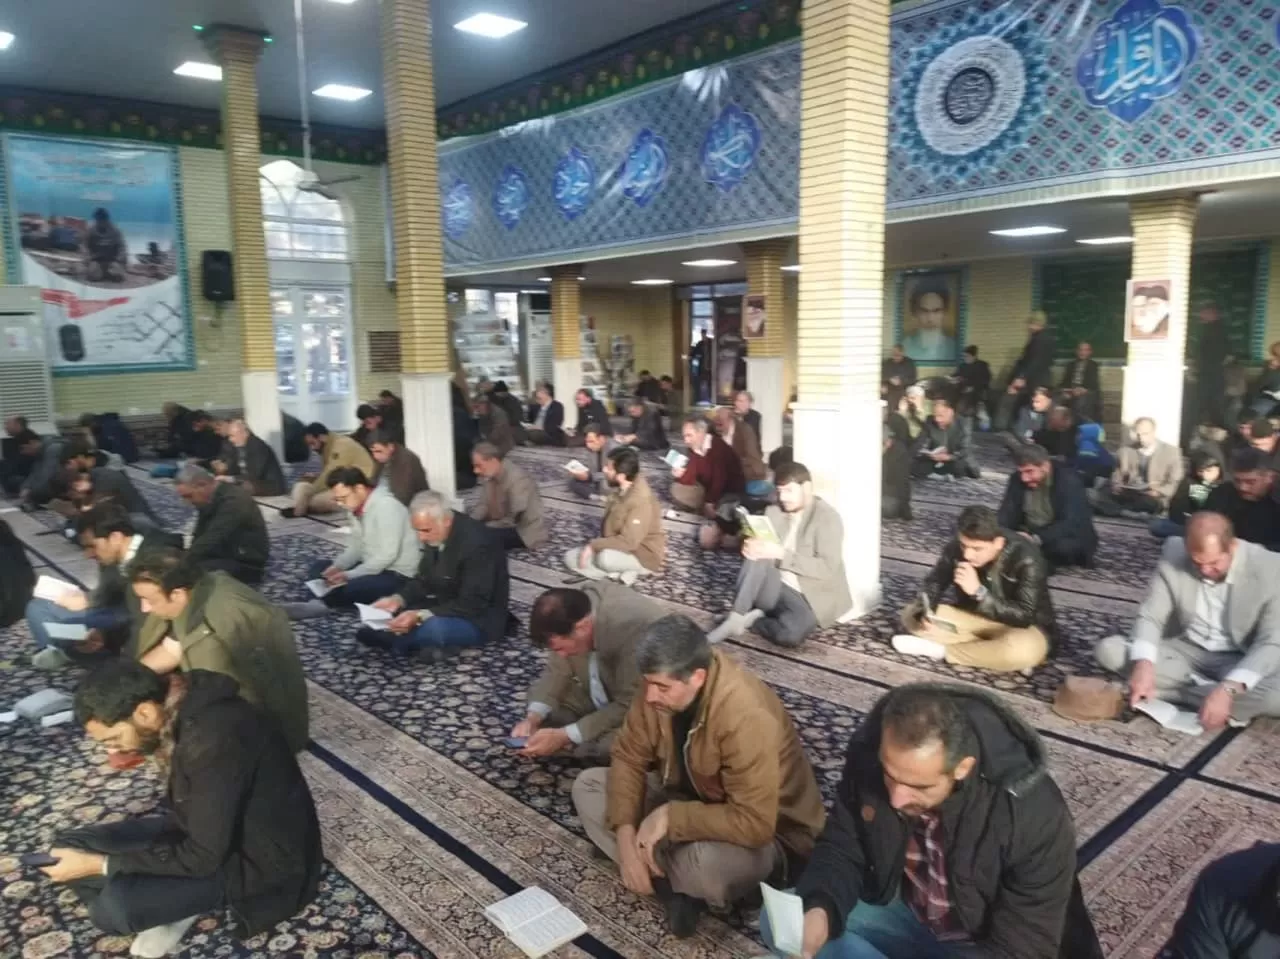 شرکت پرشکوه بسیجیان کرمانشاهی در دعای ندبه